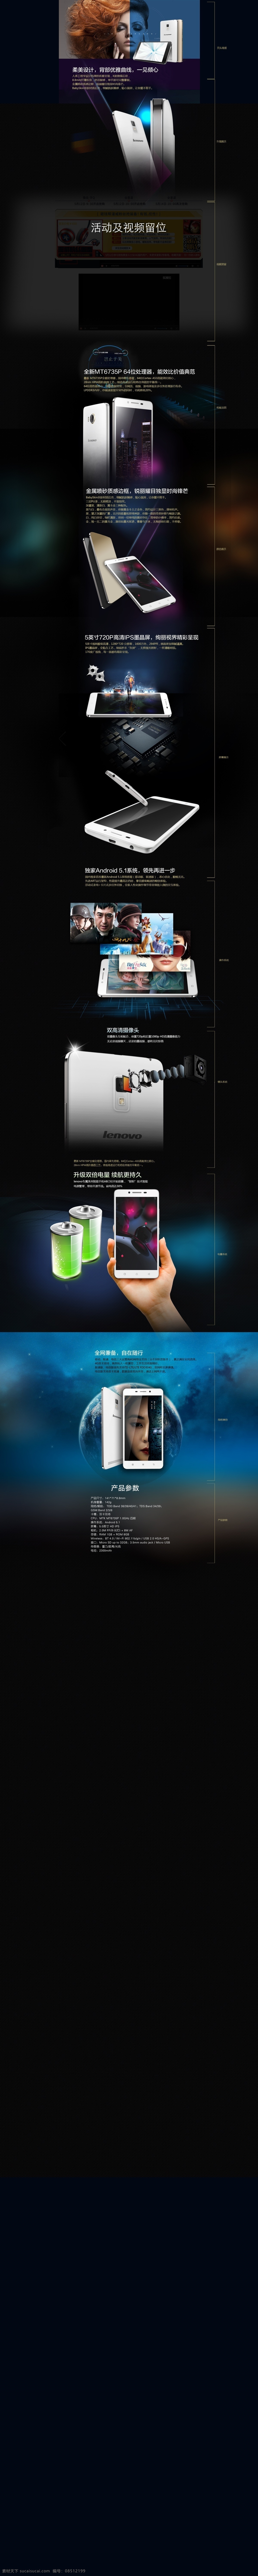 联想手机设计 炫酷背景 科幻题材 文字创意 产品psd 黑色